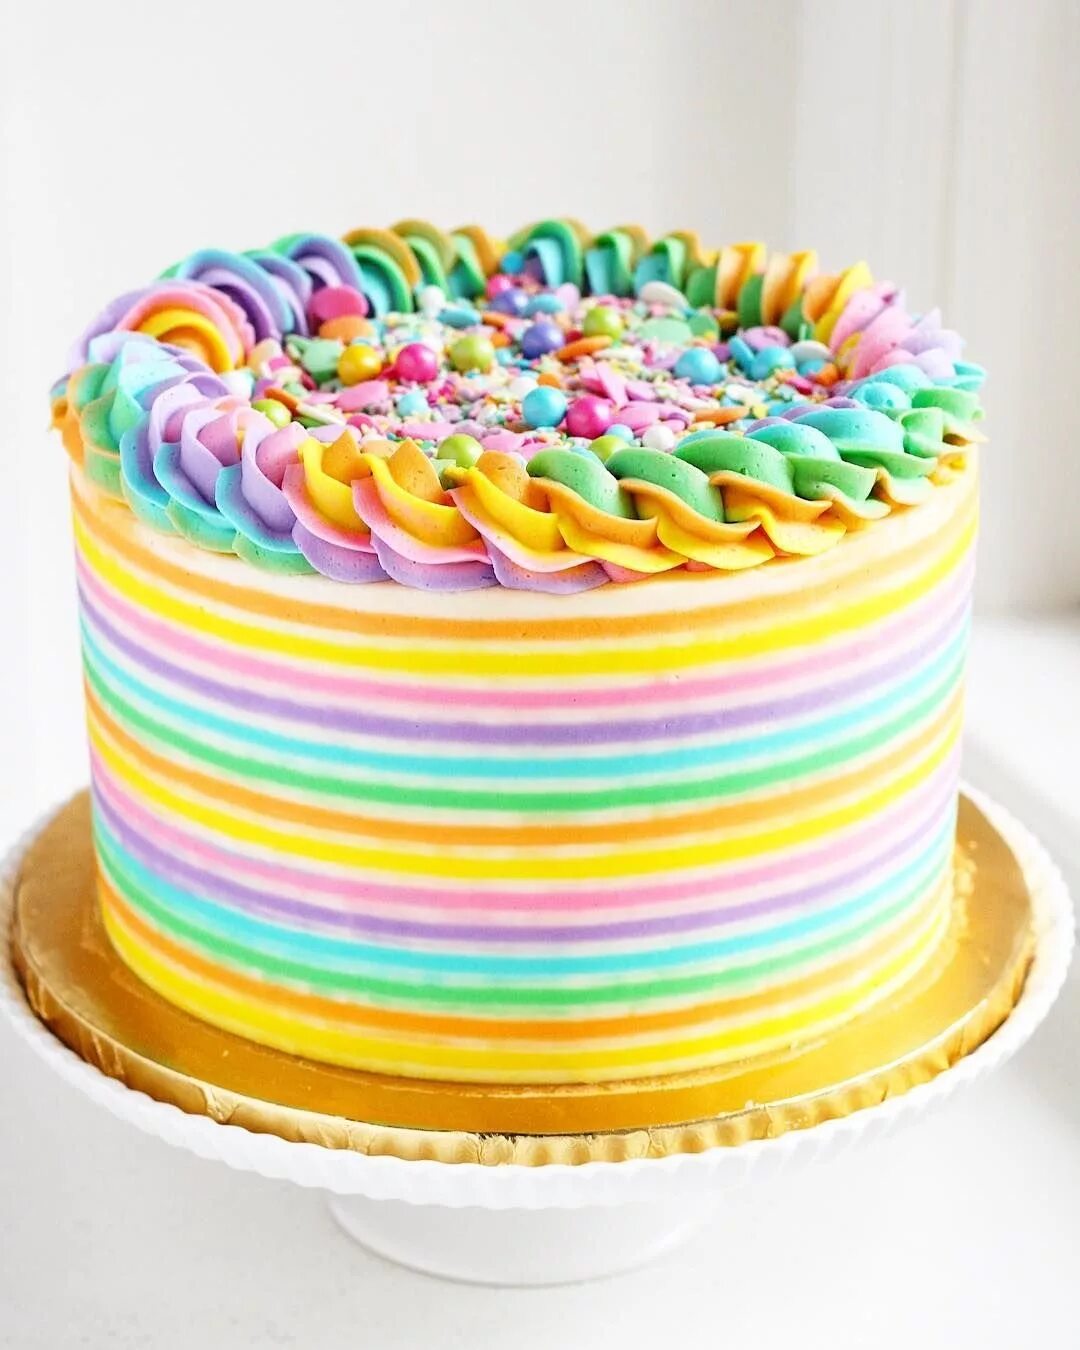 Цветное день рождения. Торт Радуга с кремом чиз. Рейнбоу кейк. Радужный крем чиз. Разноцветный детский торт.